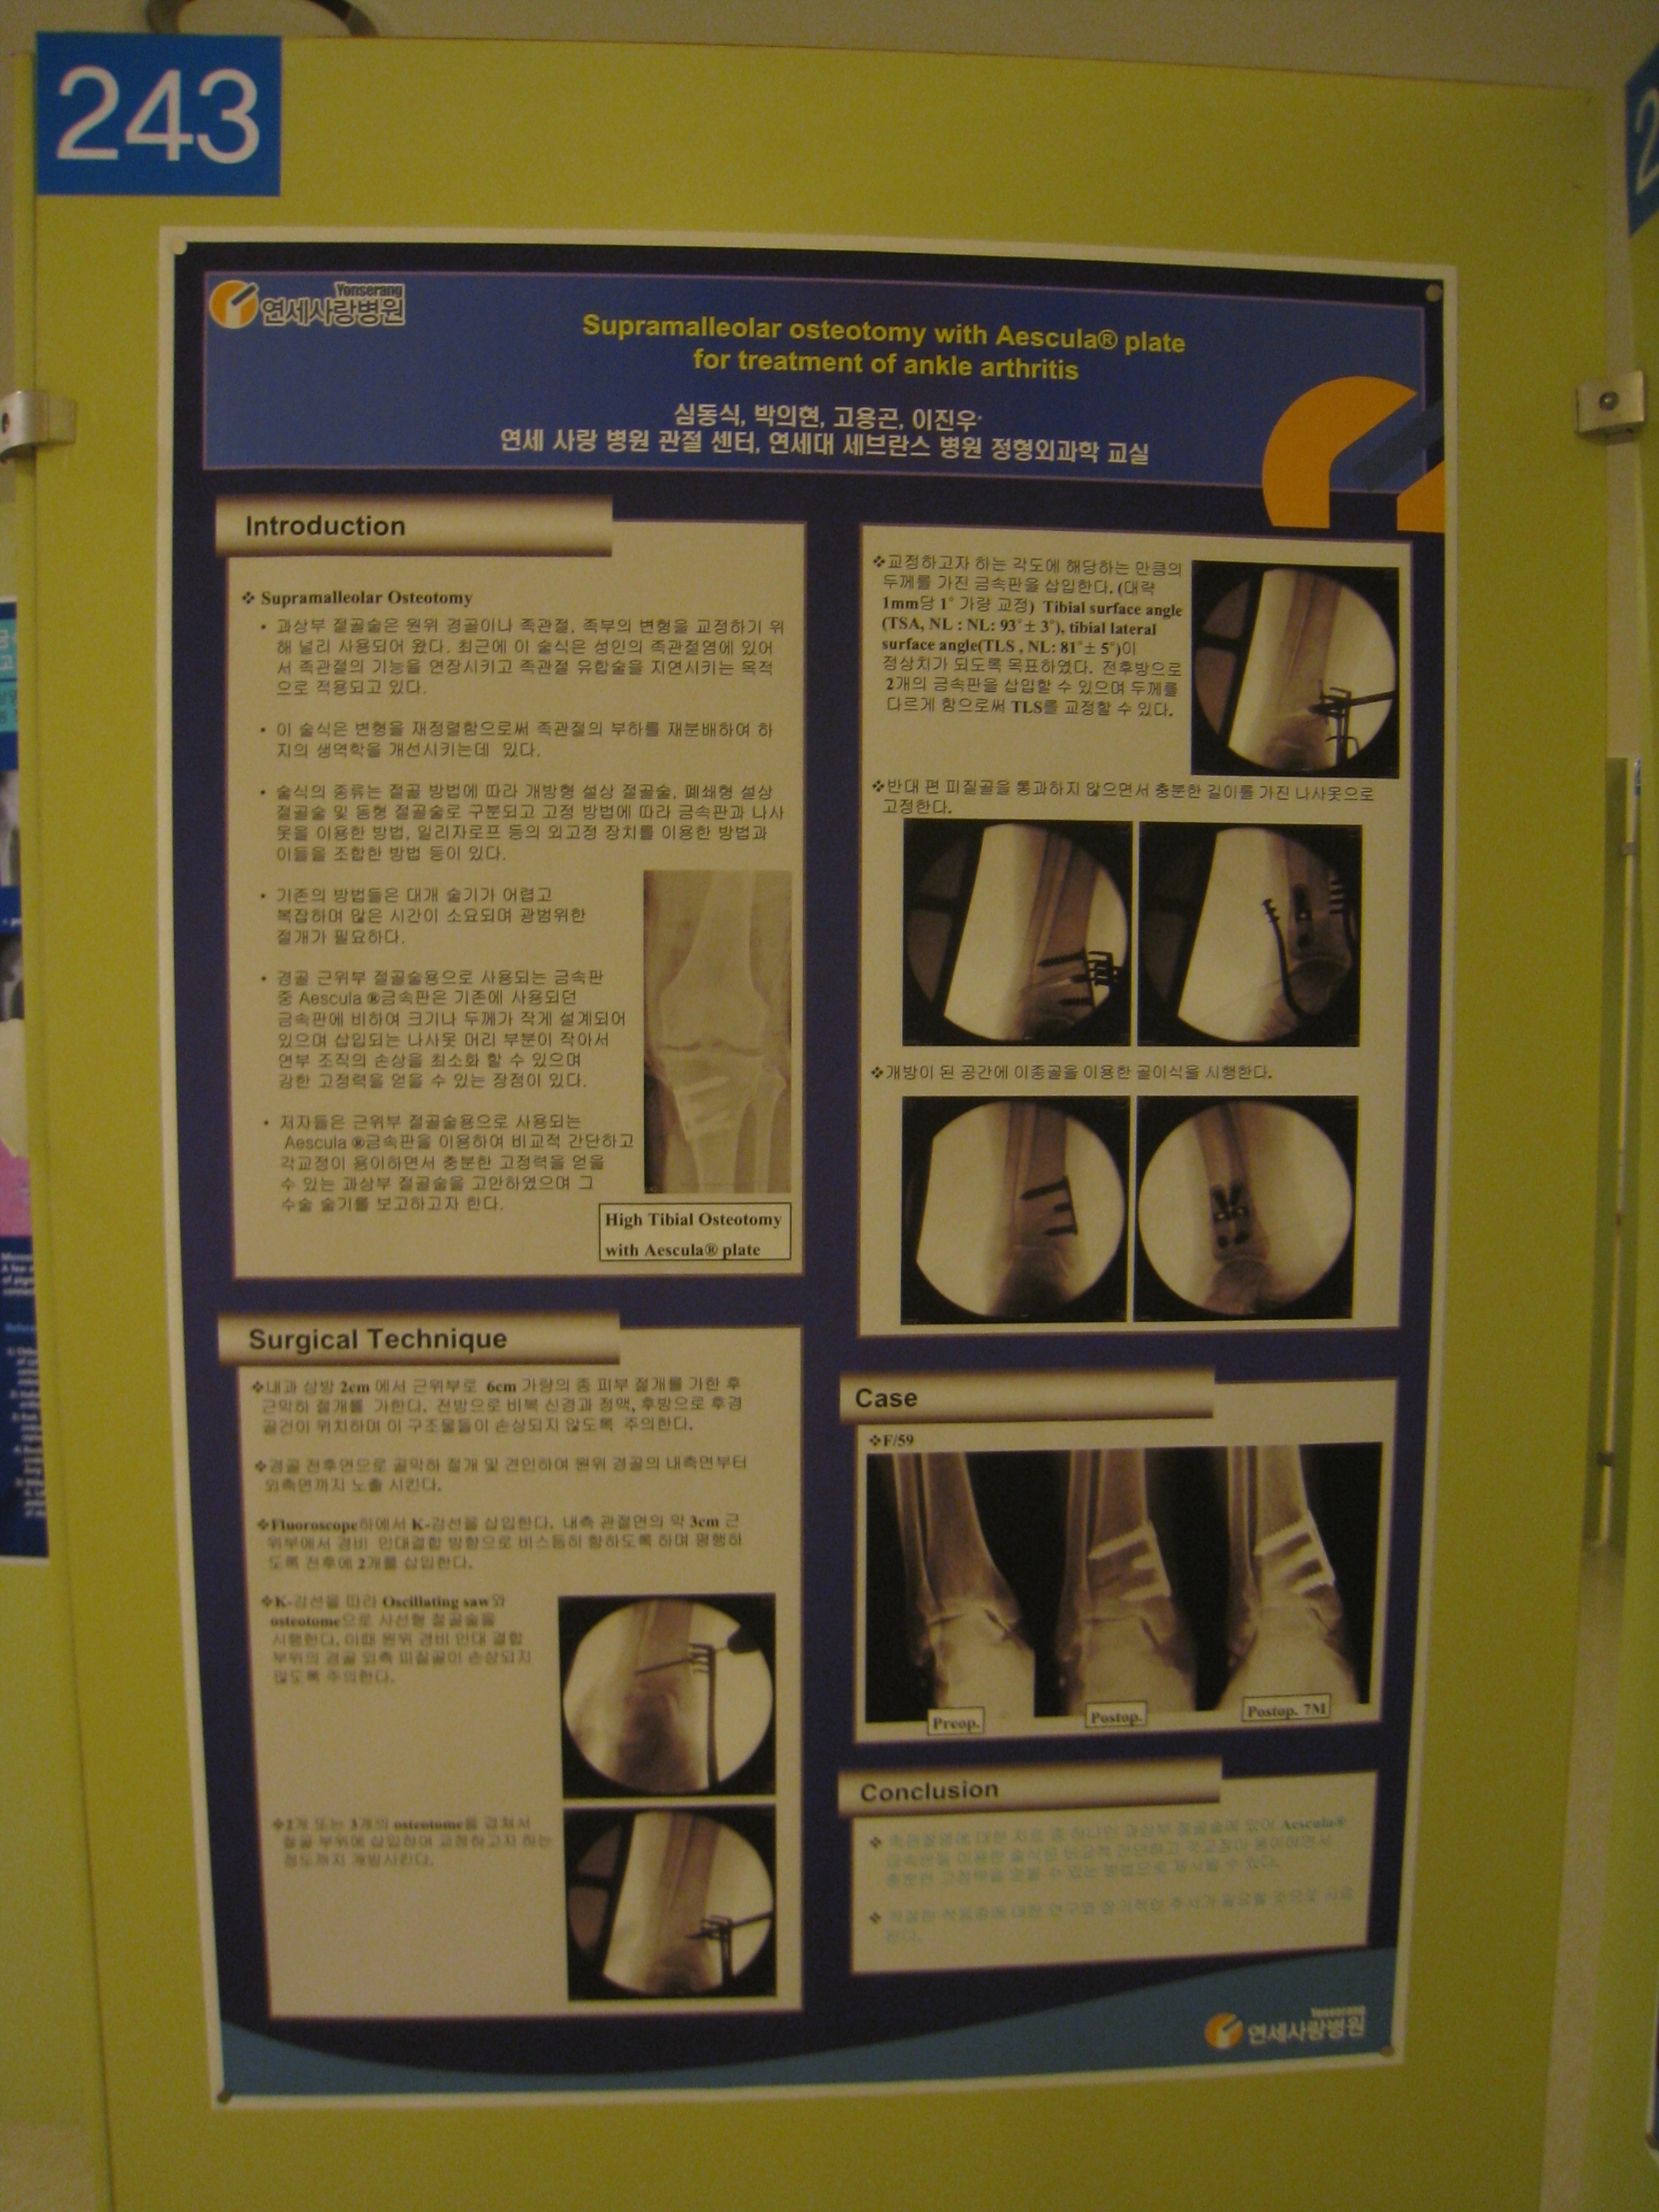 [2009 대한정형외과 학회 포스터] 족관절 관절염 치료 시 Aescula  금속판을 이용한 과상방 절골술 게시글의 1번째 첨부파일입니다.